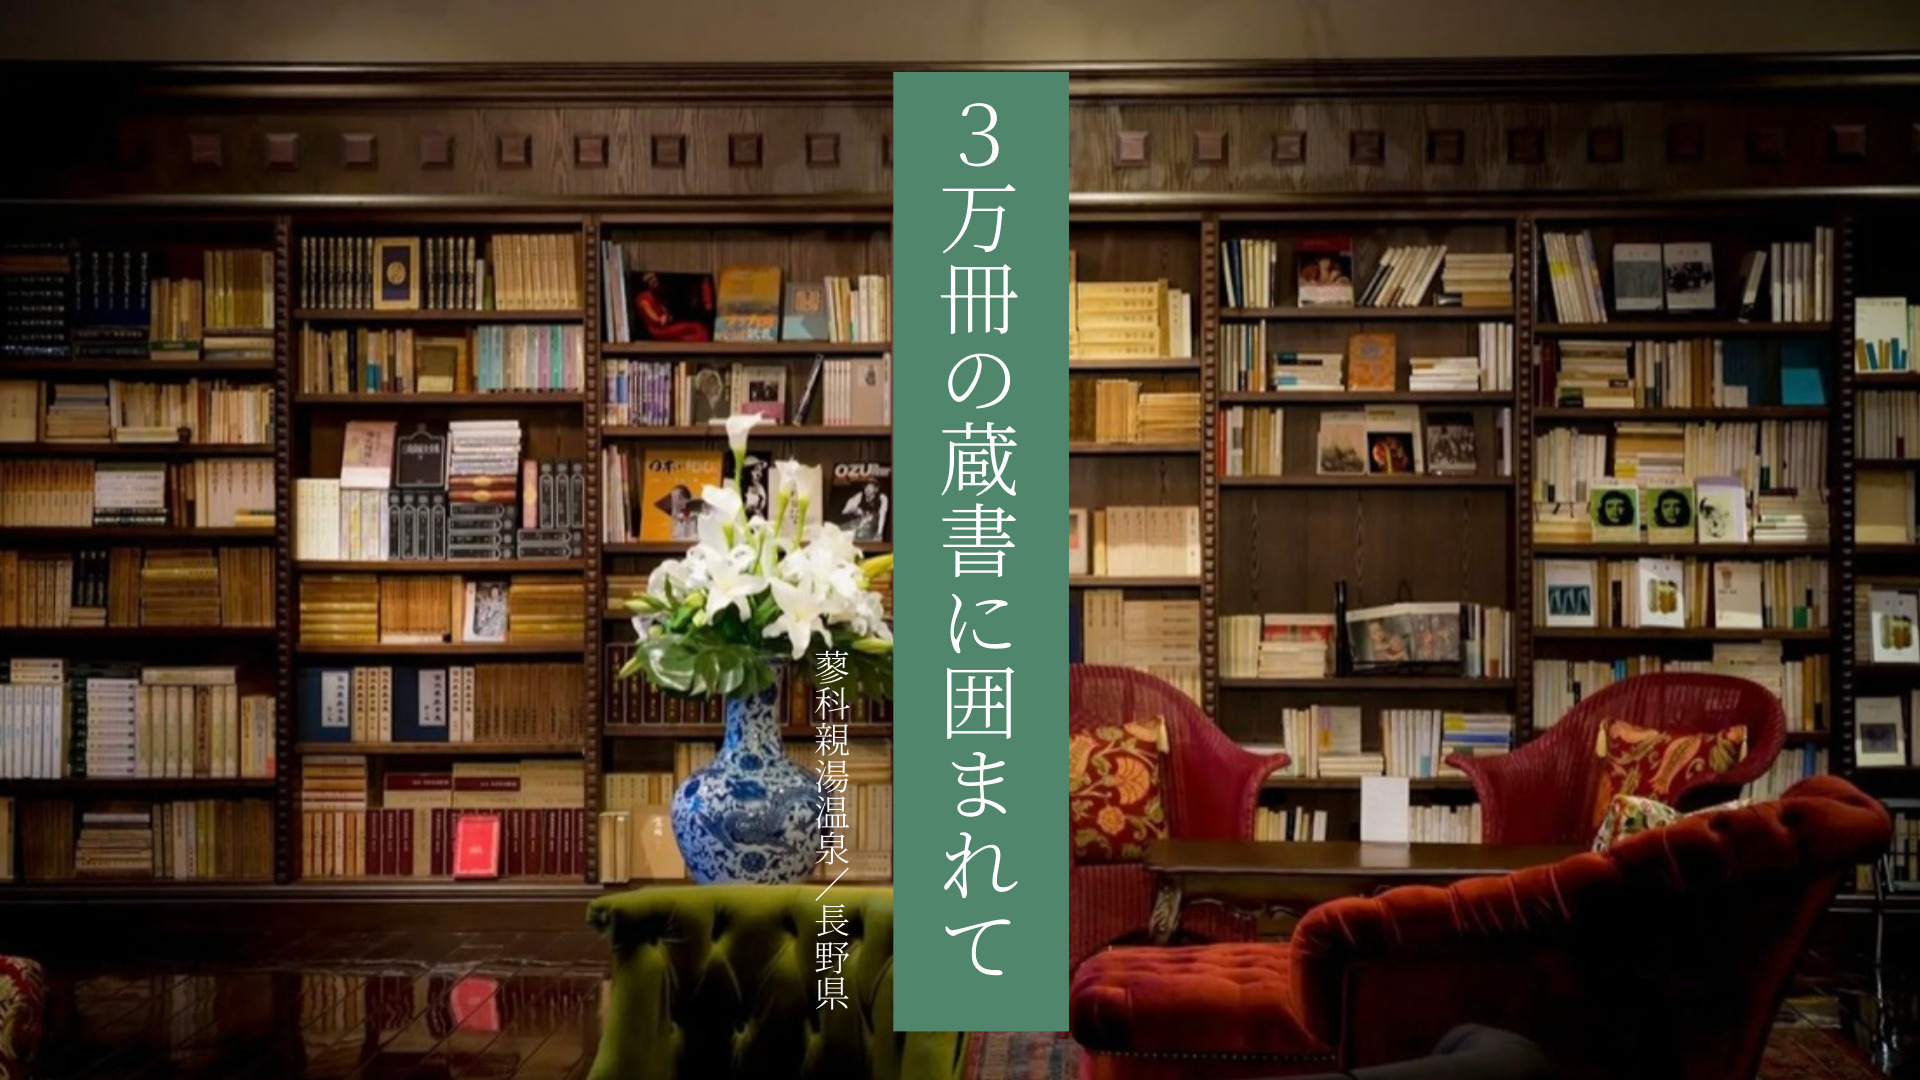 【長野県】3万冊の蔵書が揃う、知的な空間「蓼科新湯温泉」で温泉と本を愉しむステイ